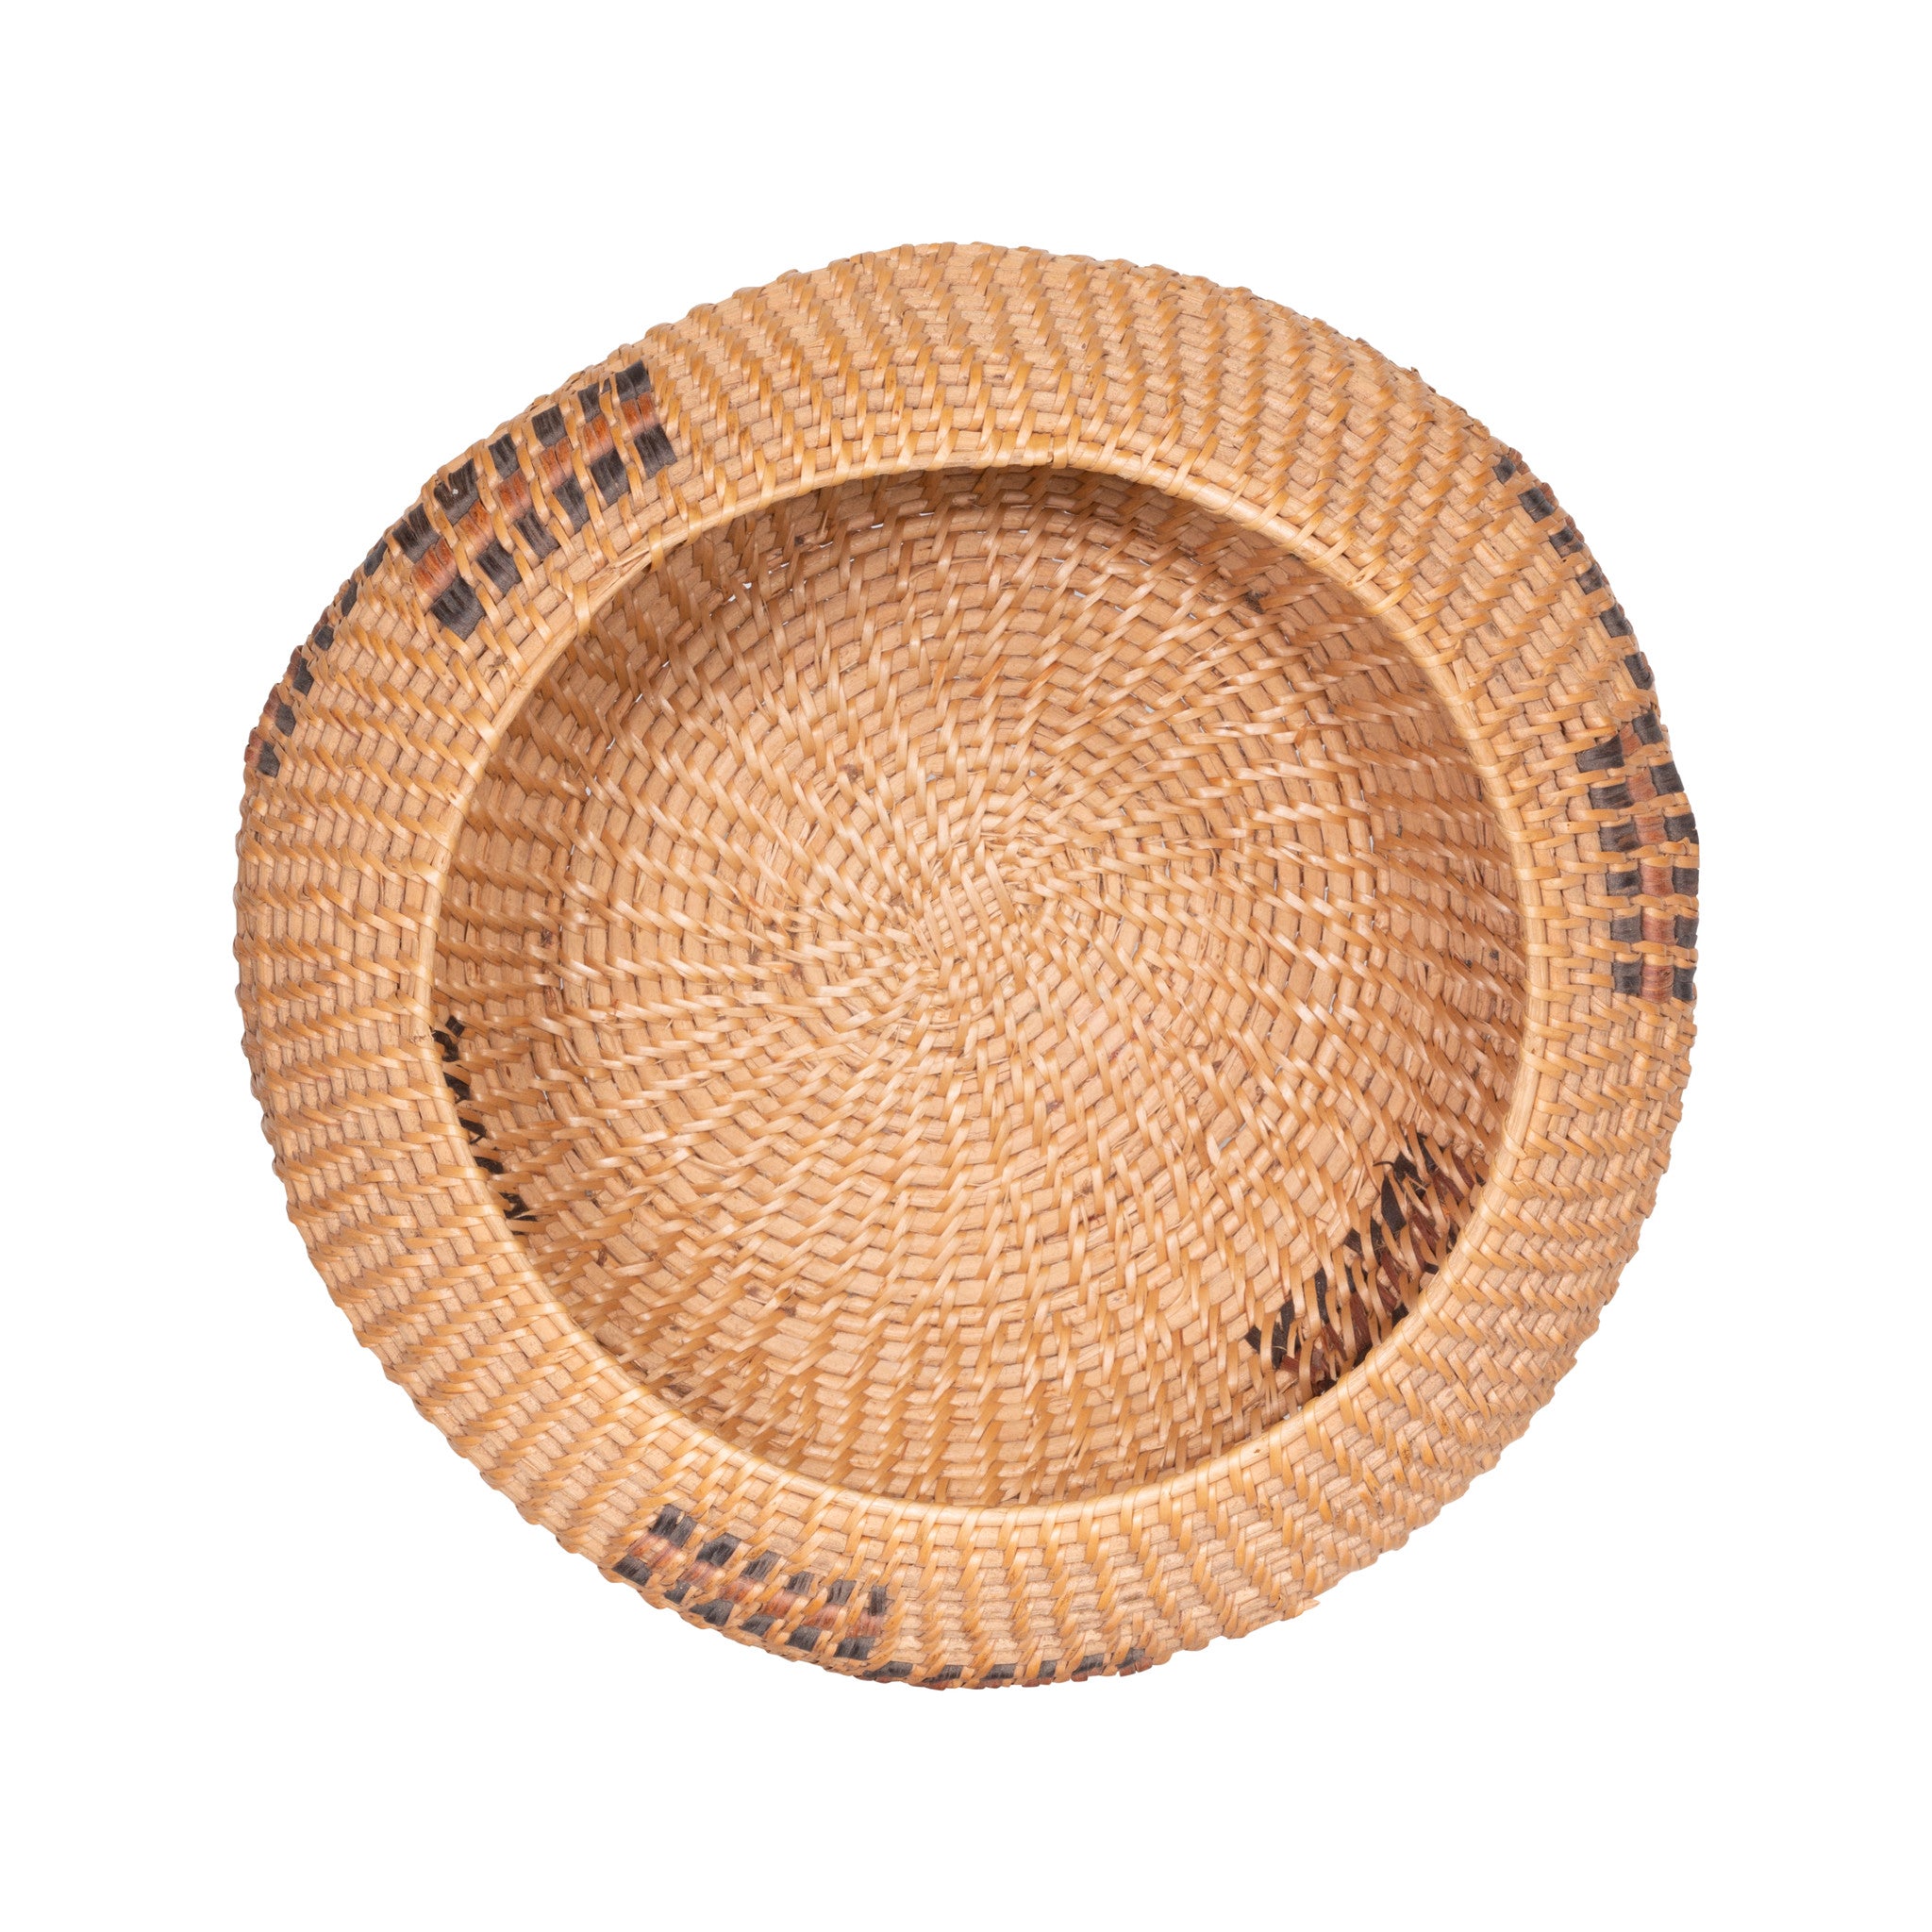 Washoe Lidded Basket